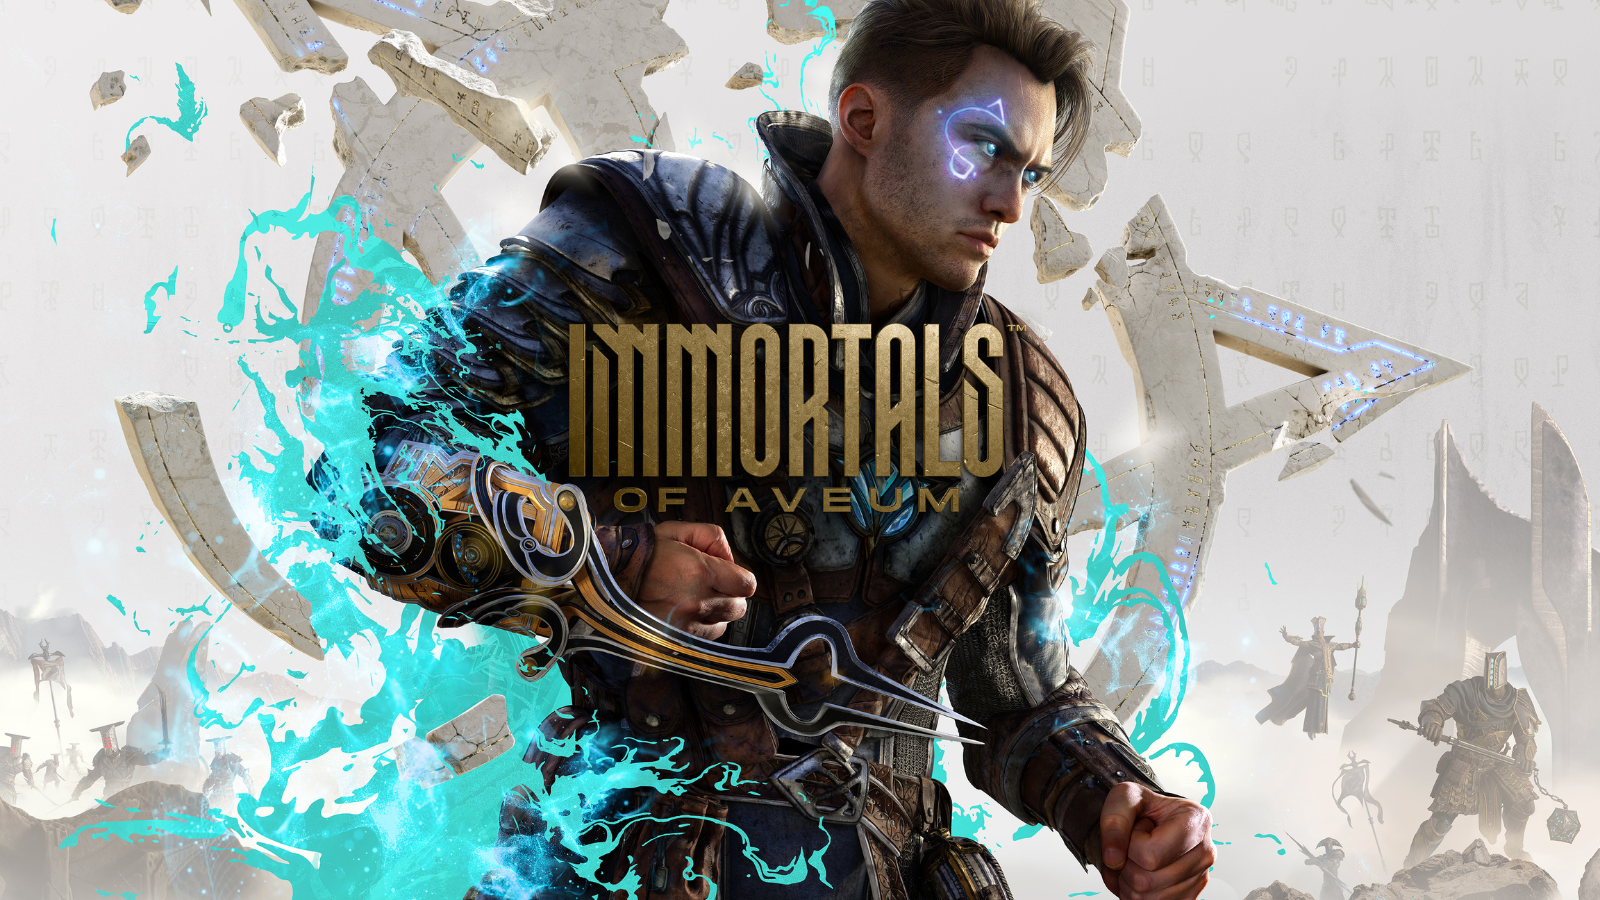 Immortals of Aveum Wallpaper 4K, 2023 Games, PC Games